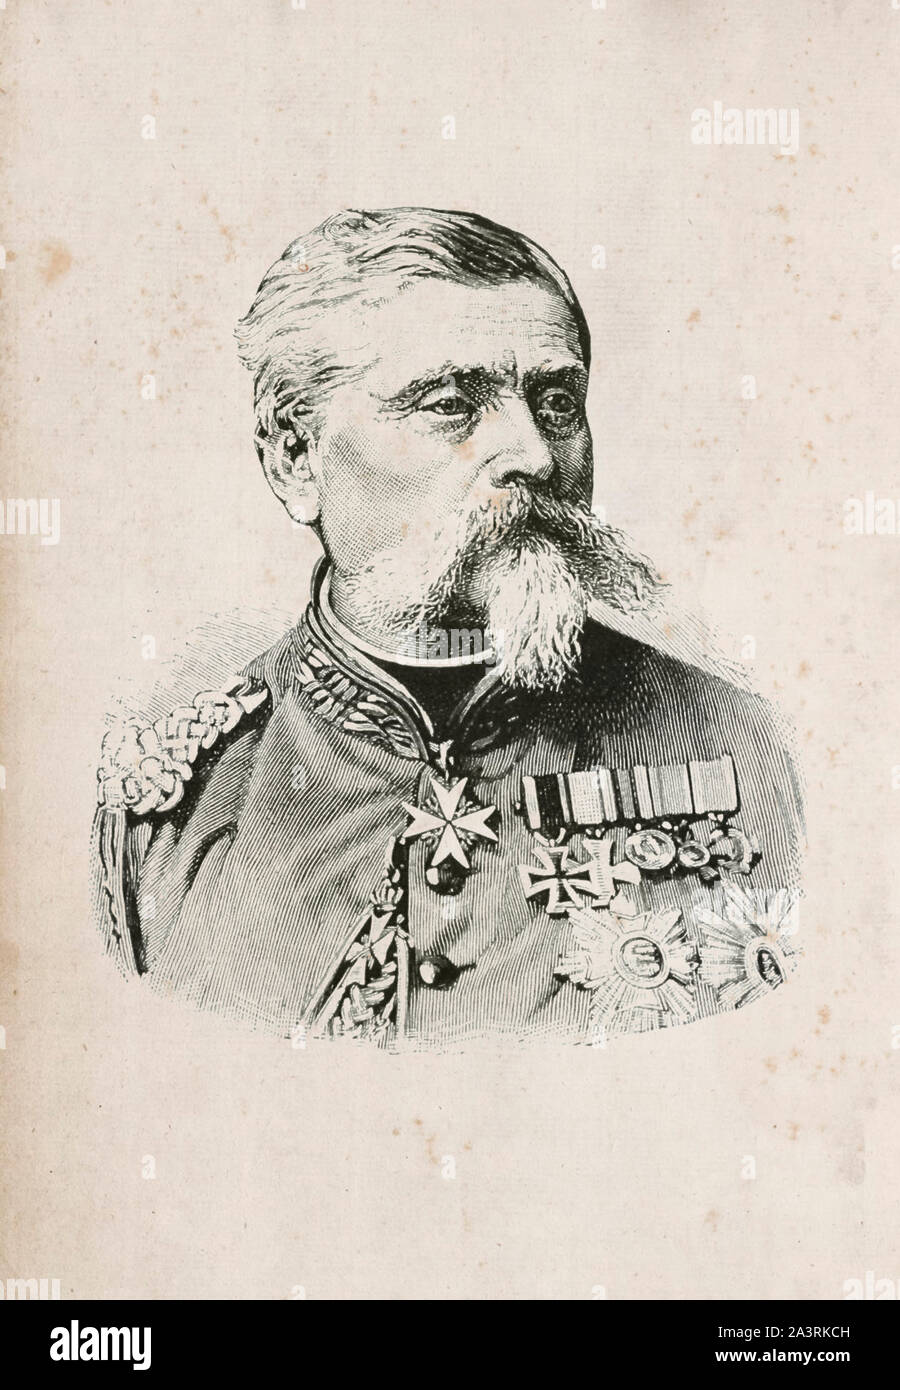 Samson Arthur Heinrich Ludwig Freiherr von und zu der Tann-Rathsamhausen (1815 - 1881) était un général de Bavière. Banque D'Images